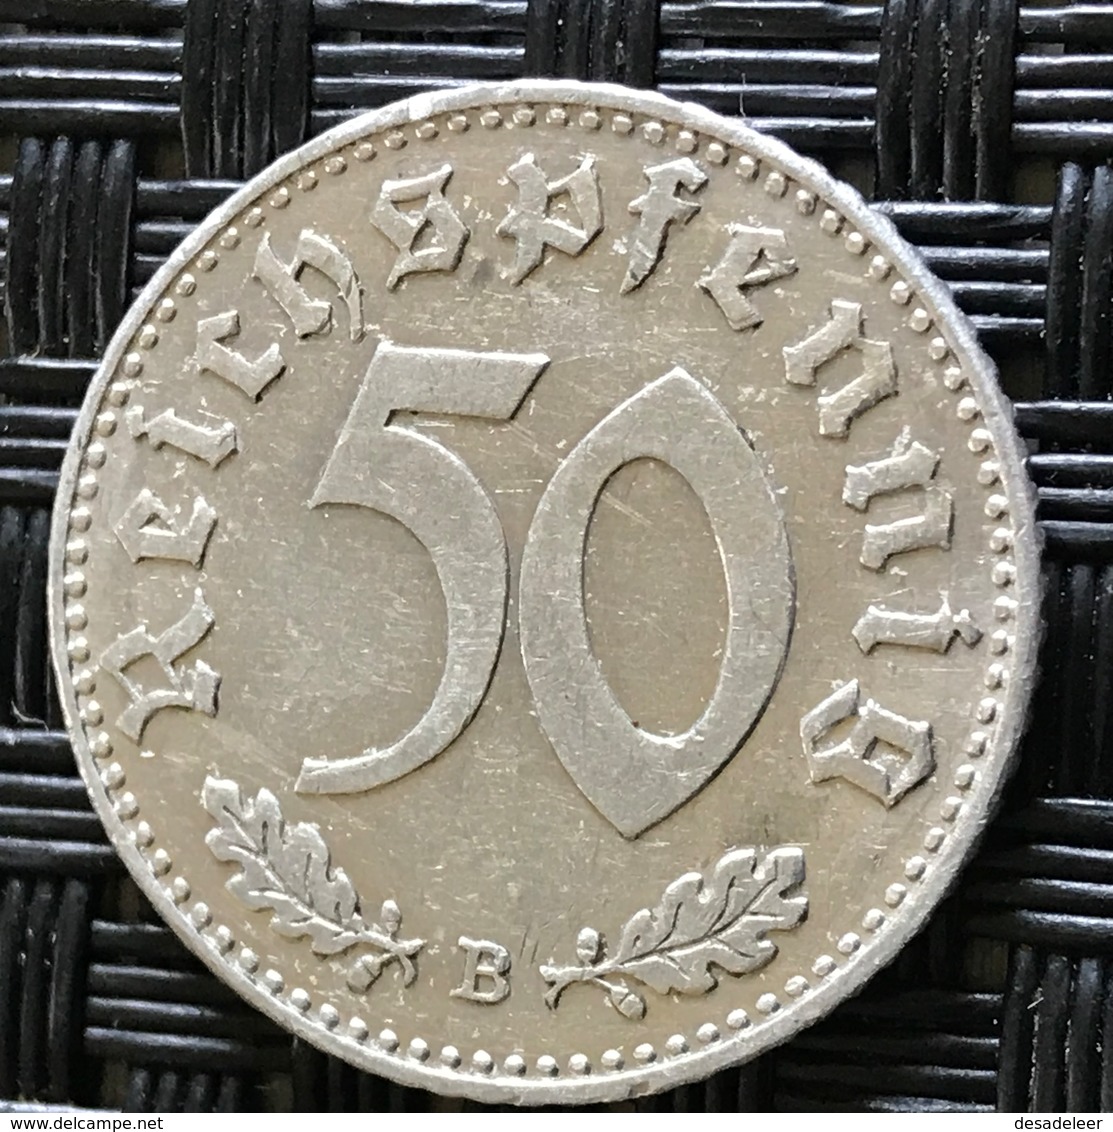 German Empire 50 Reichspfennig 1941 (B) - 50 Reichspfennig